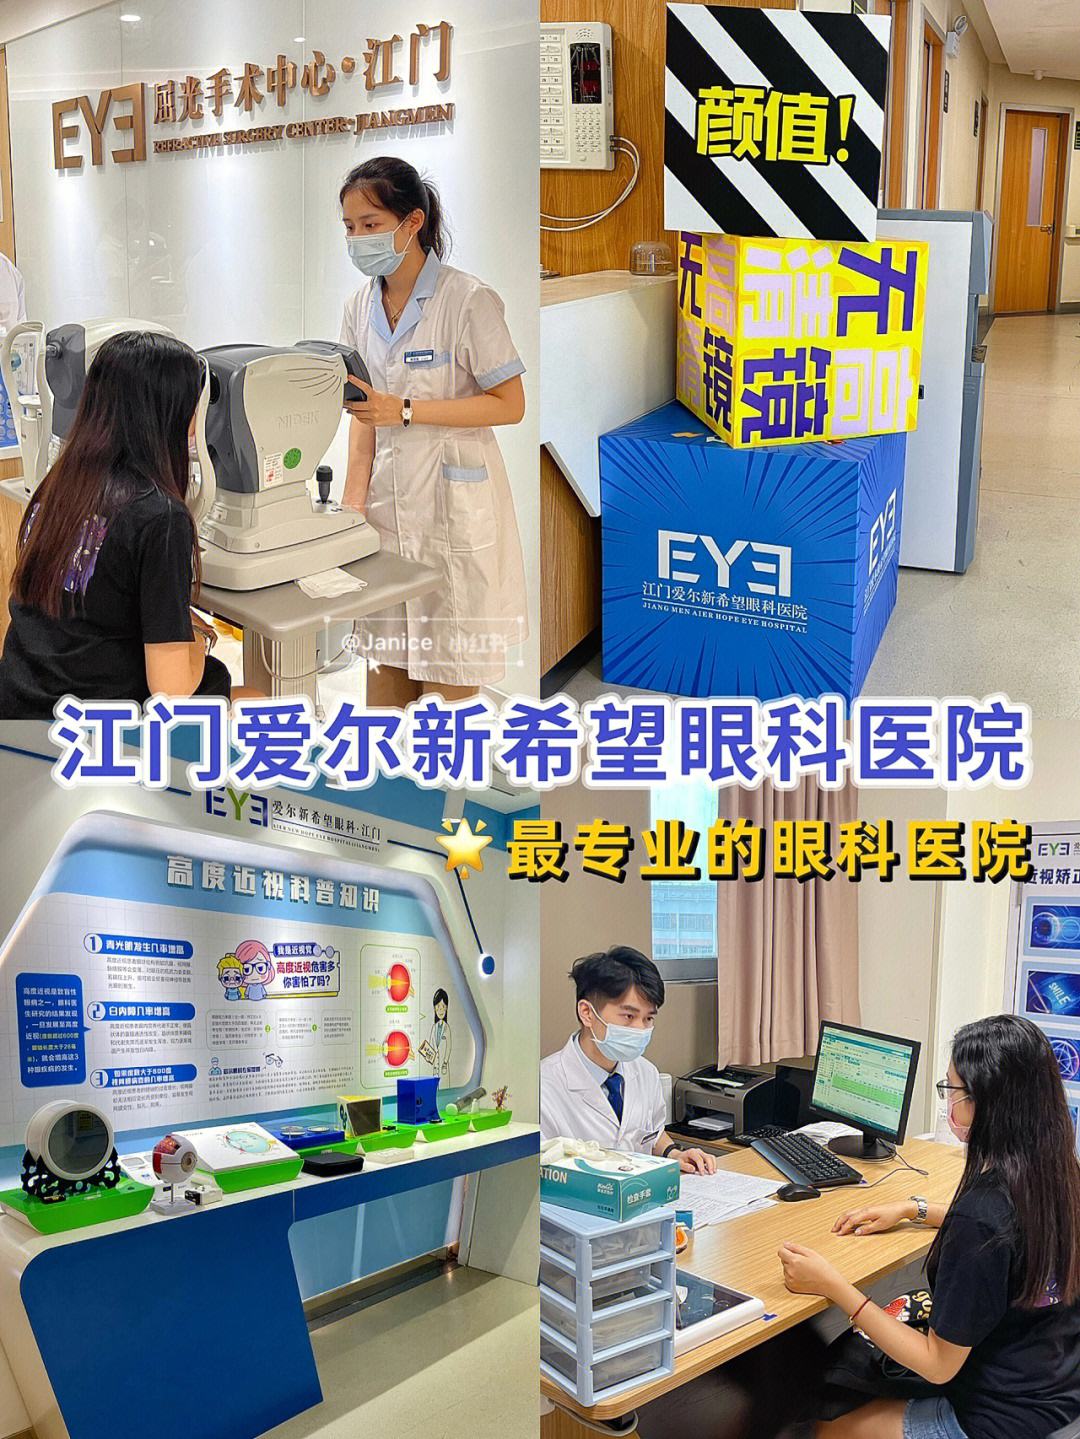 关于北京爱耳英智眼科医院医院代诊预约挂号，互利共赢合作愉快的信息